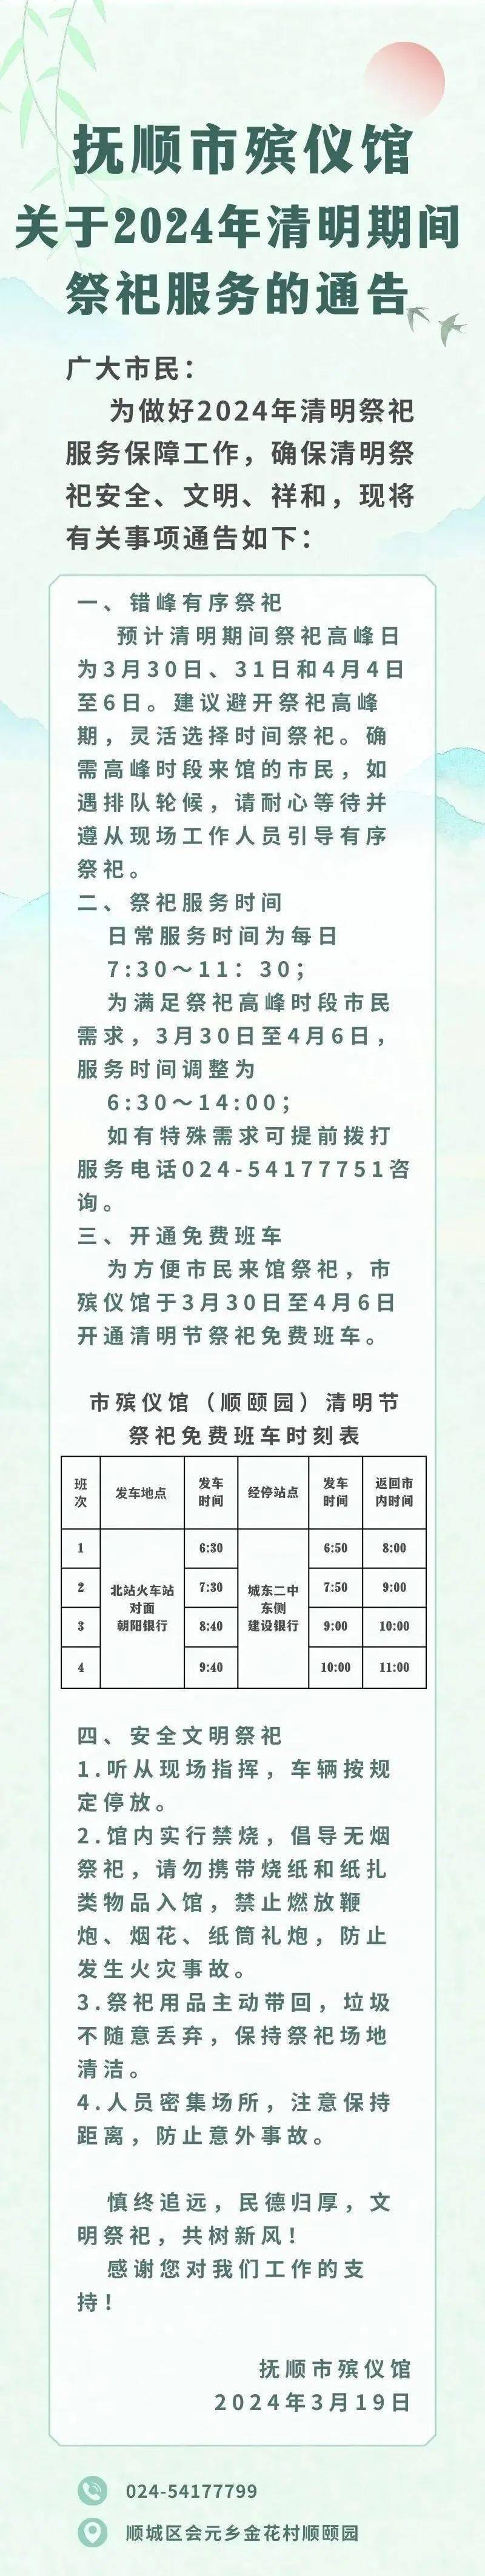 抚顺市殡仪馆关于2024年清明期间祭祀服务的通告